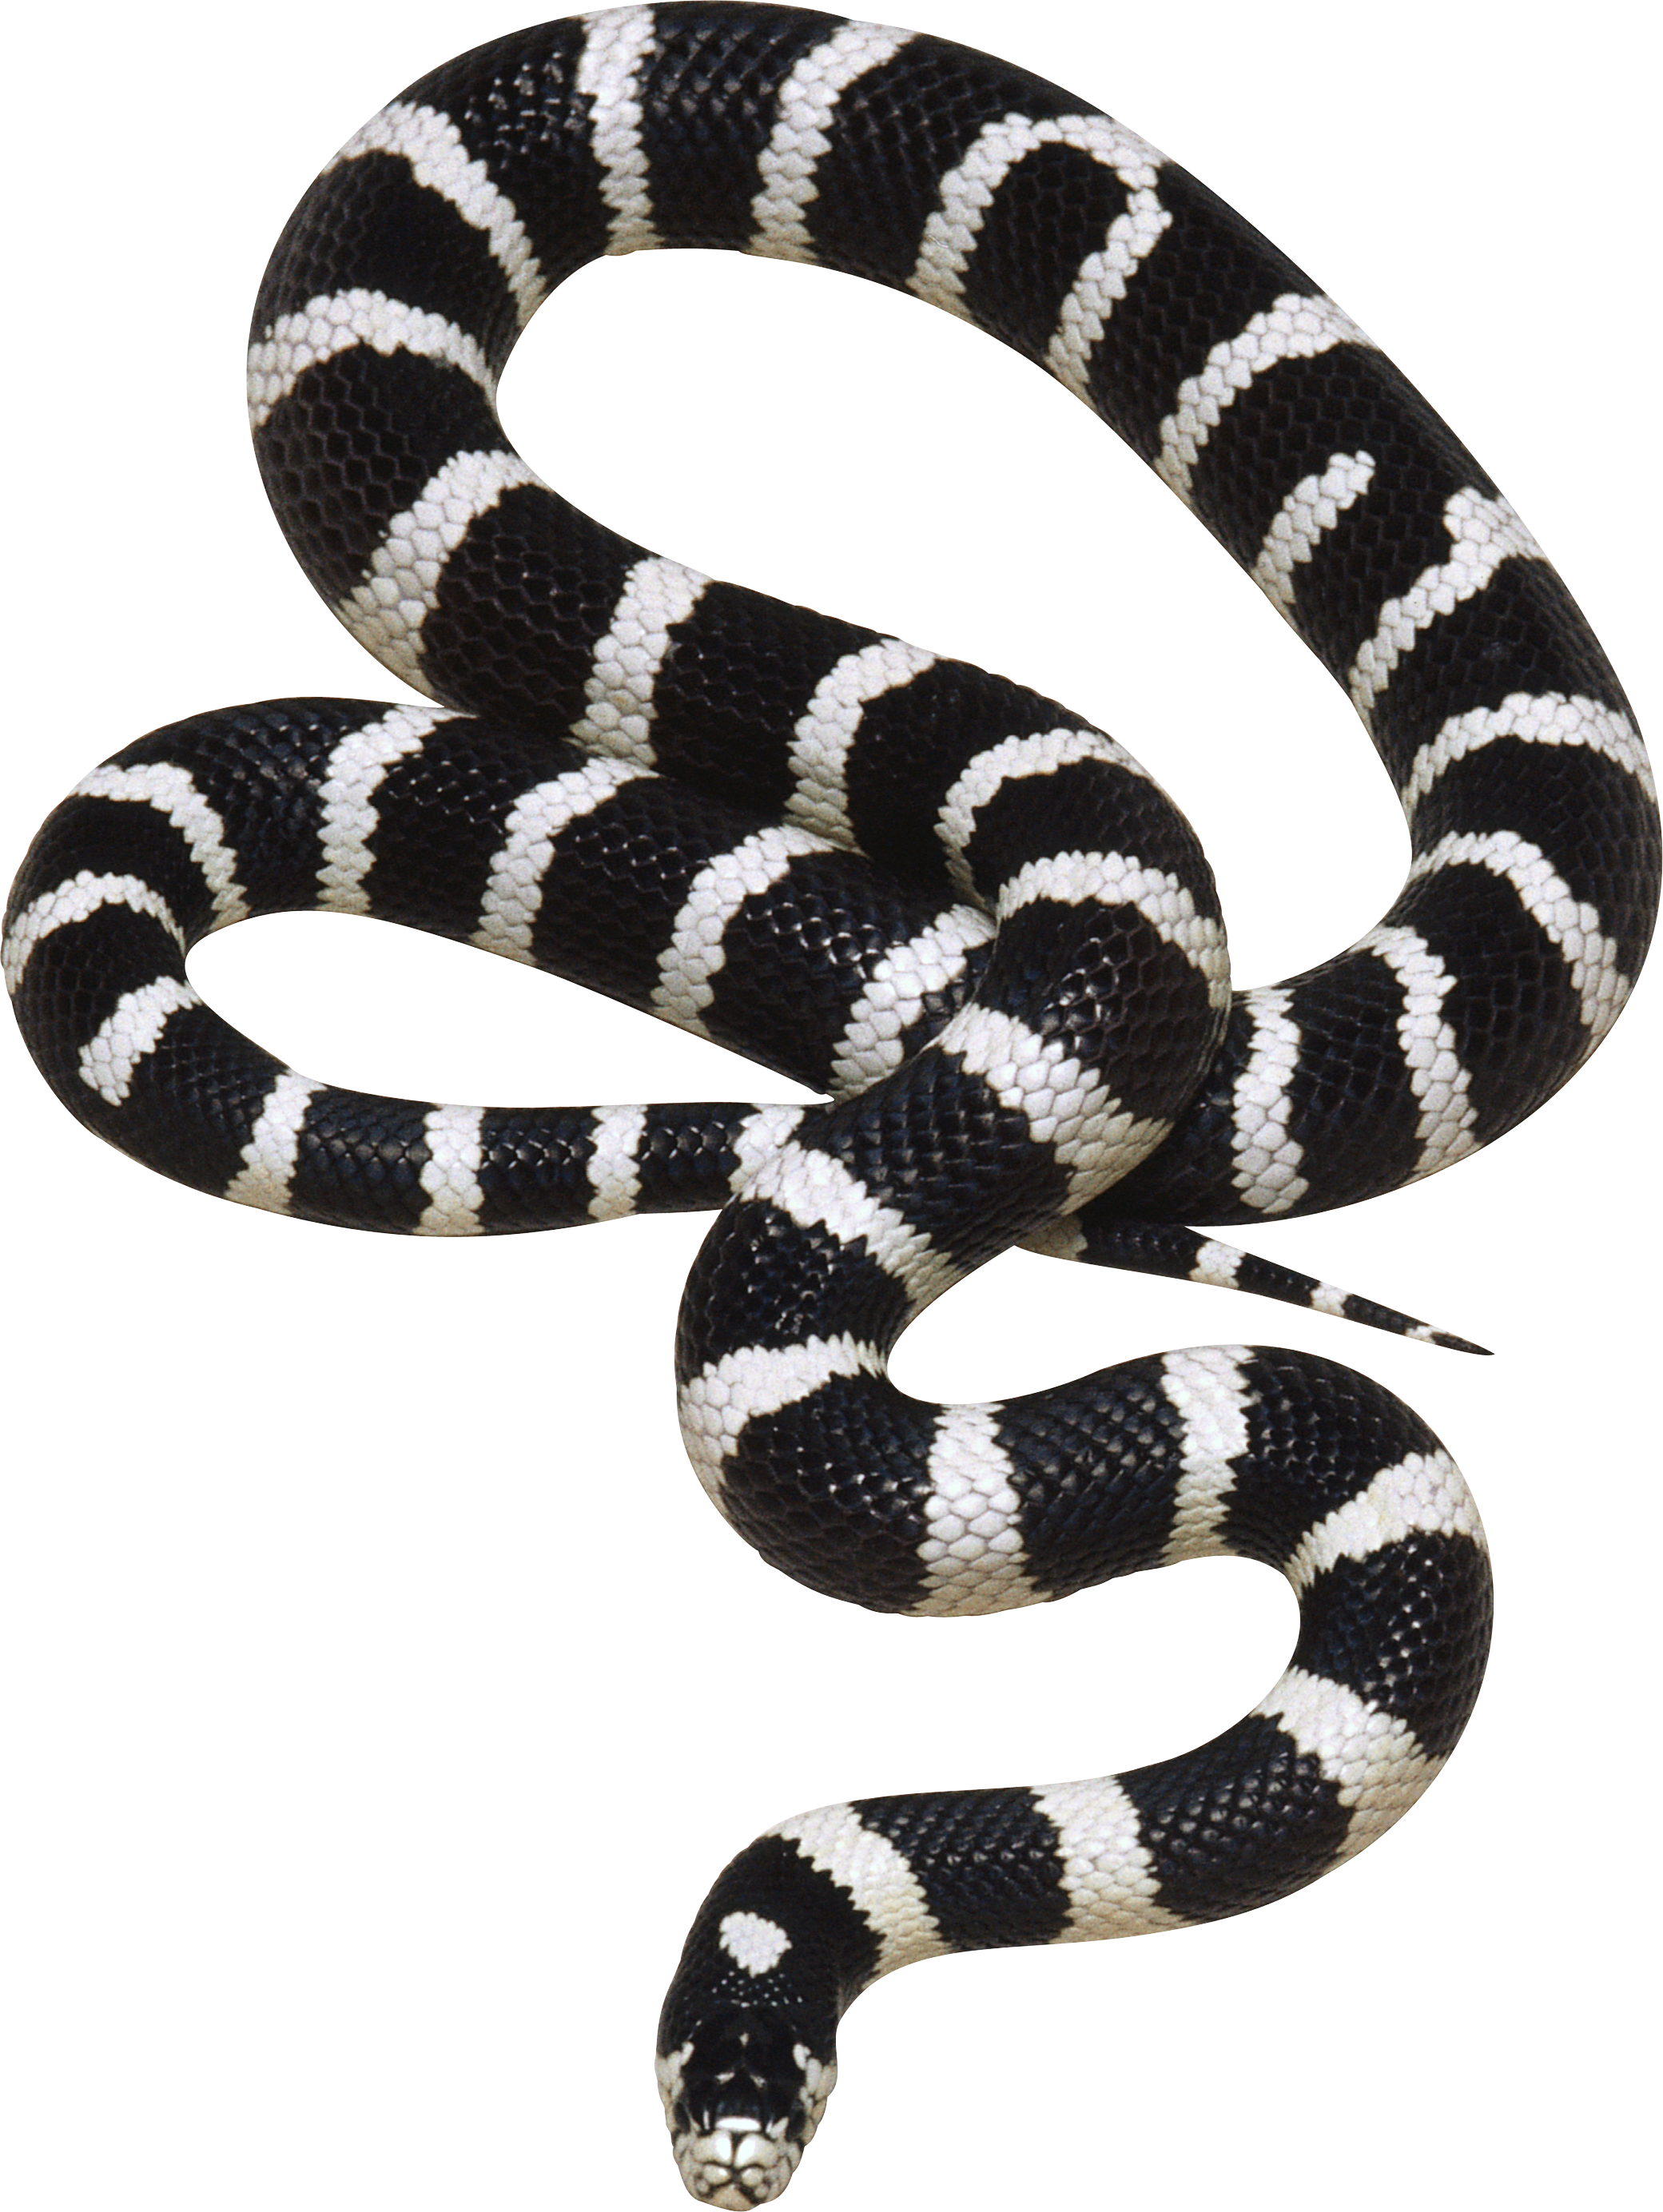 clipart snake king snake